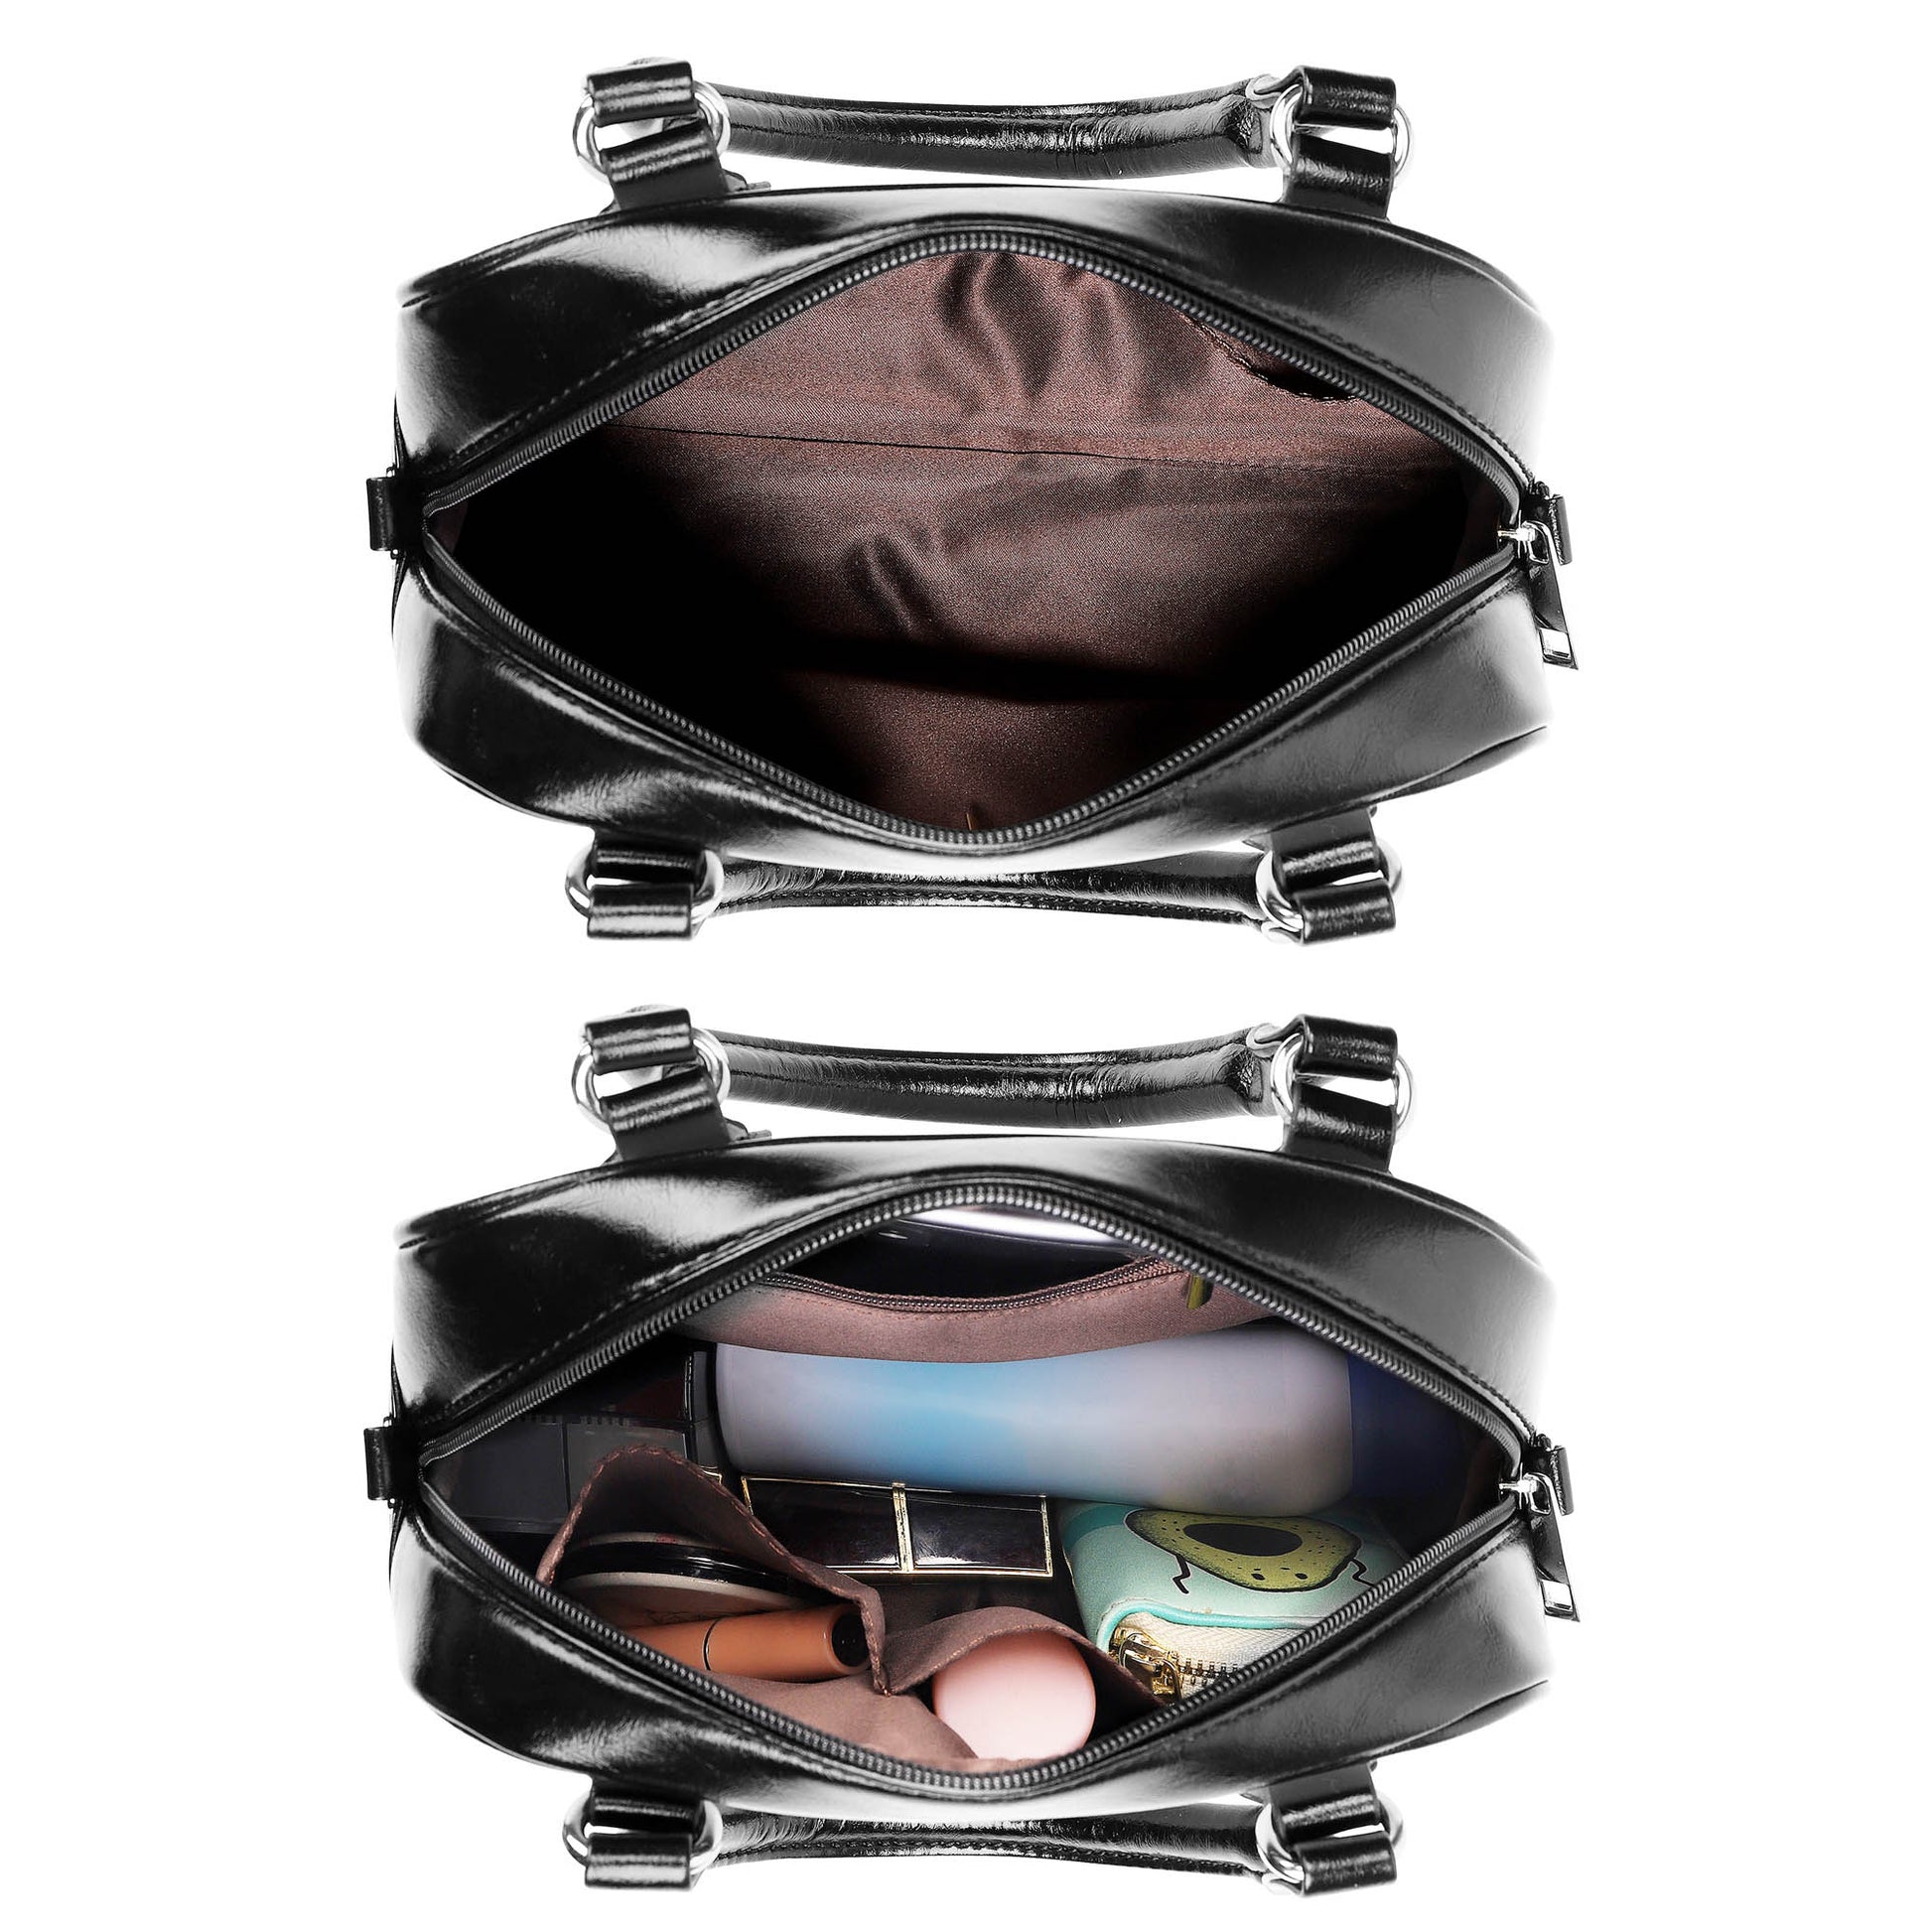 Walker James Tartan Shoulder Handbags - Tartanvibesclothing